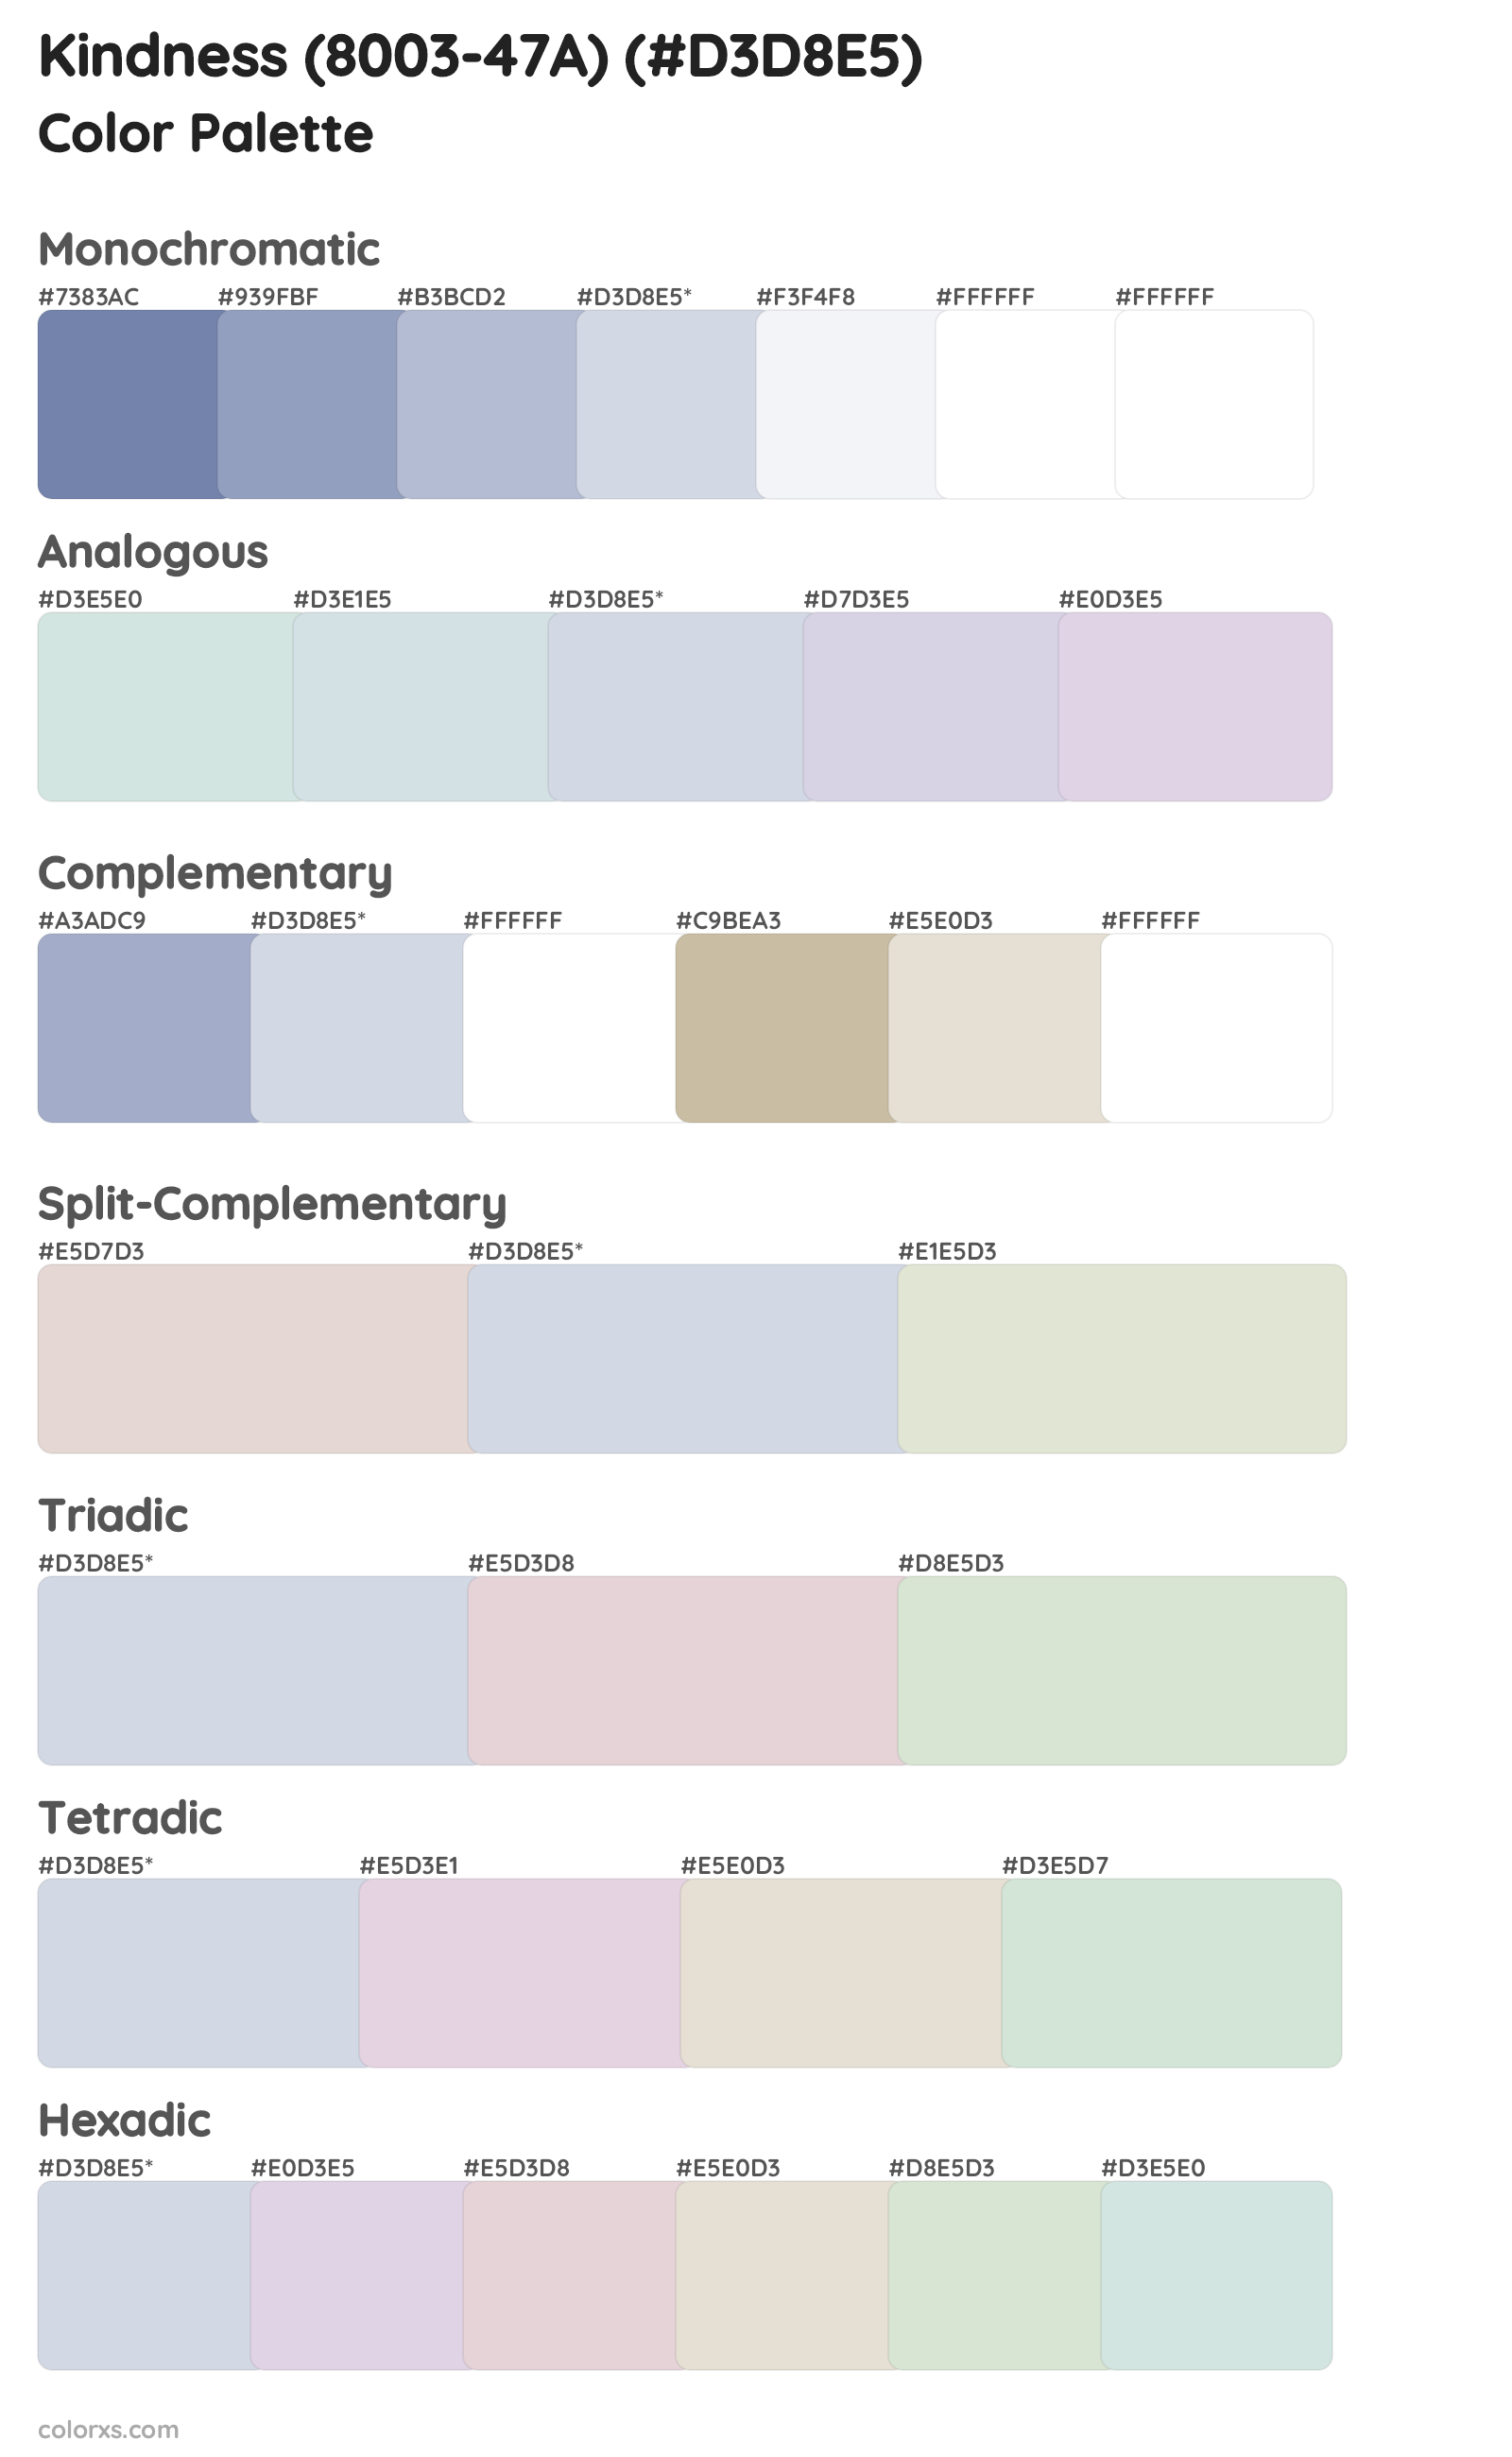 Kindness (8003-47A) Color Scheme Palettes